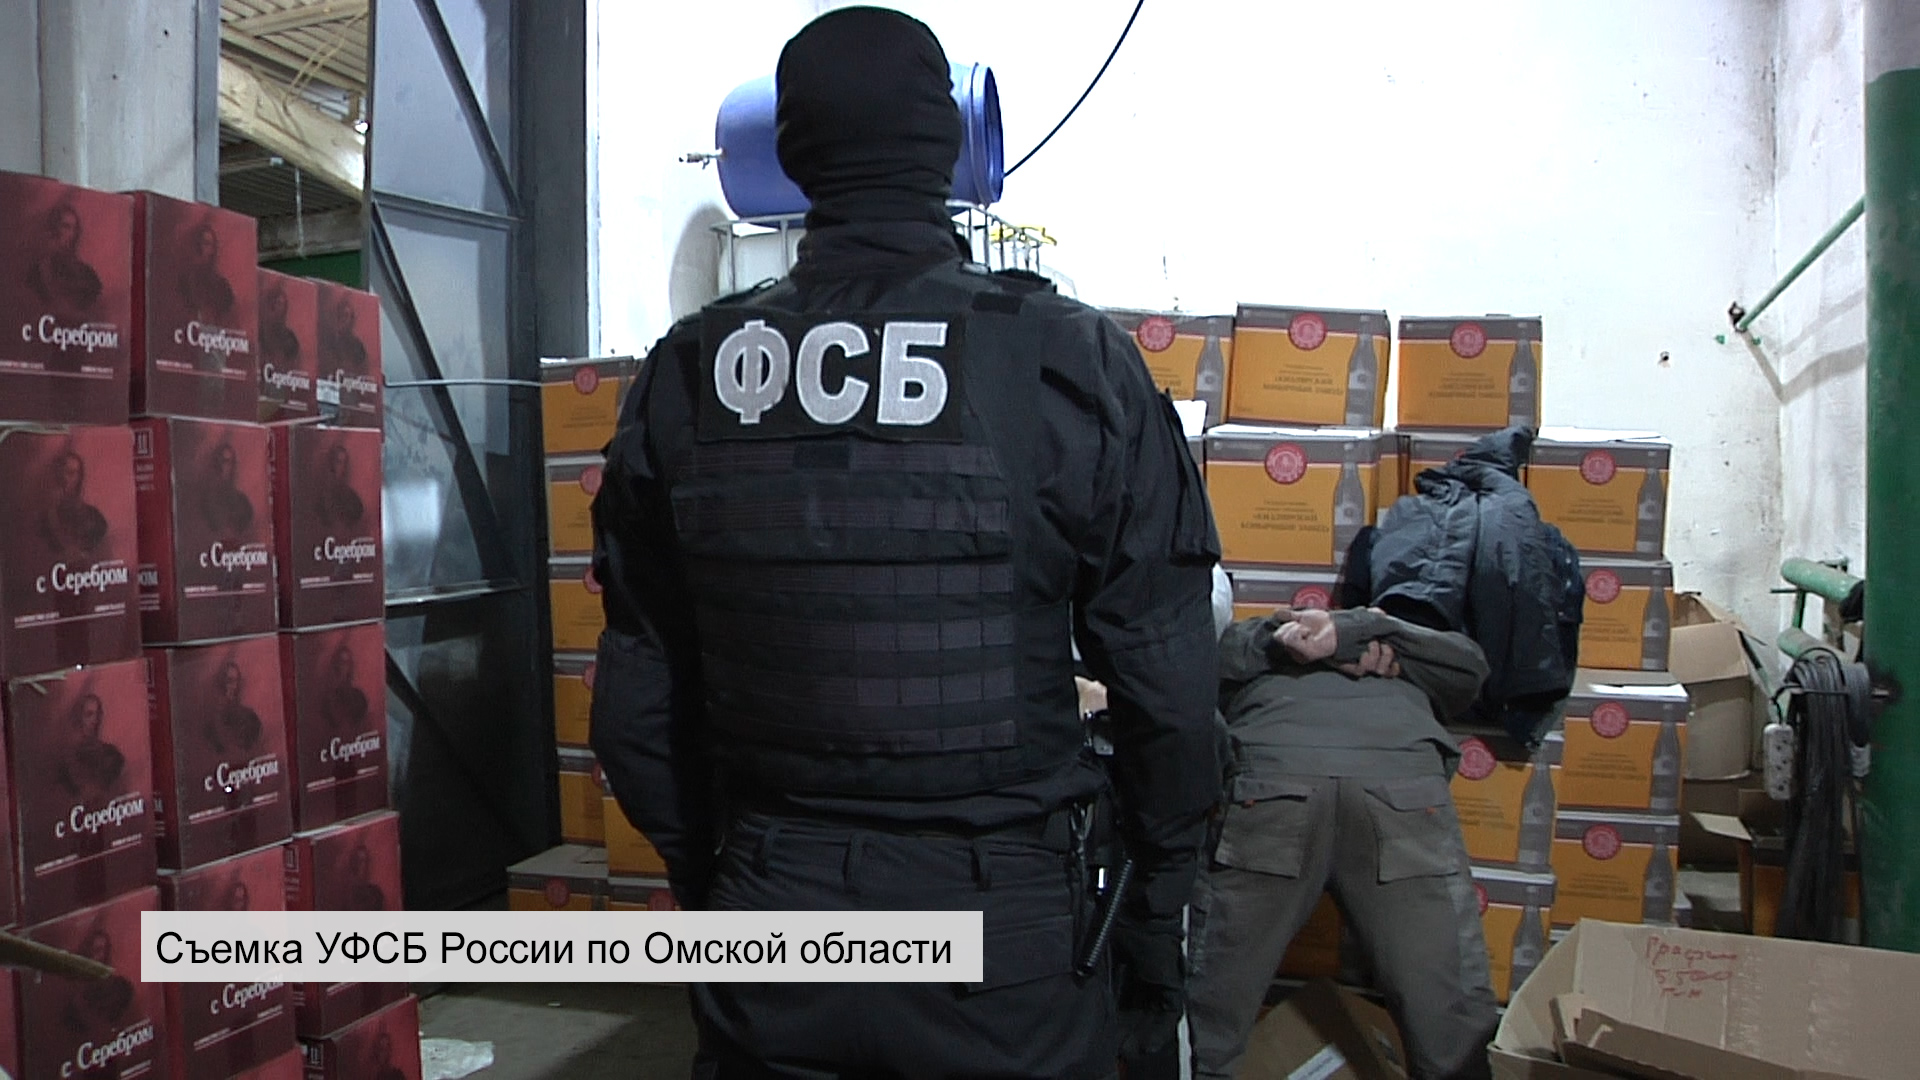 Преподаватель столичного вуза приехал в Омск подкупать сотрудника ФСБ #Омск #Общество #Сегодня